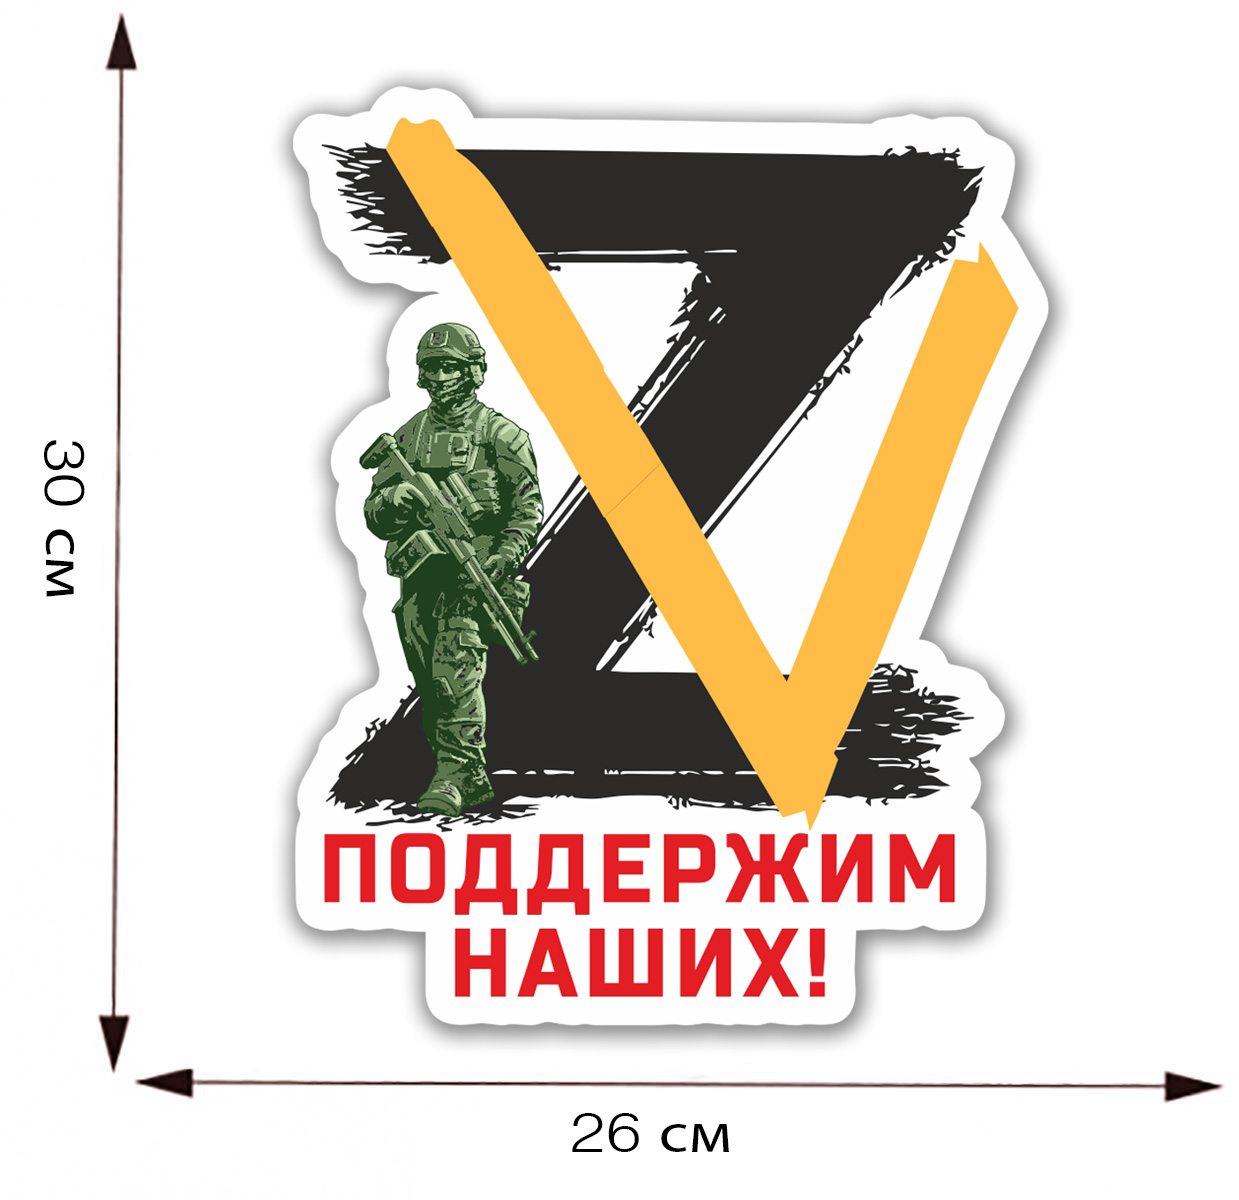 Наклейка на авто с символами ZV "Поддержим наших!"